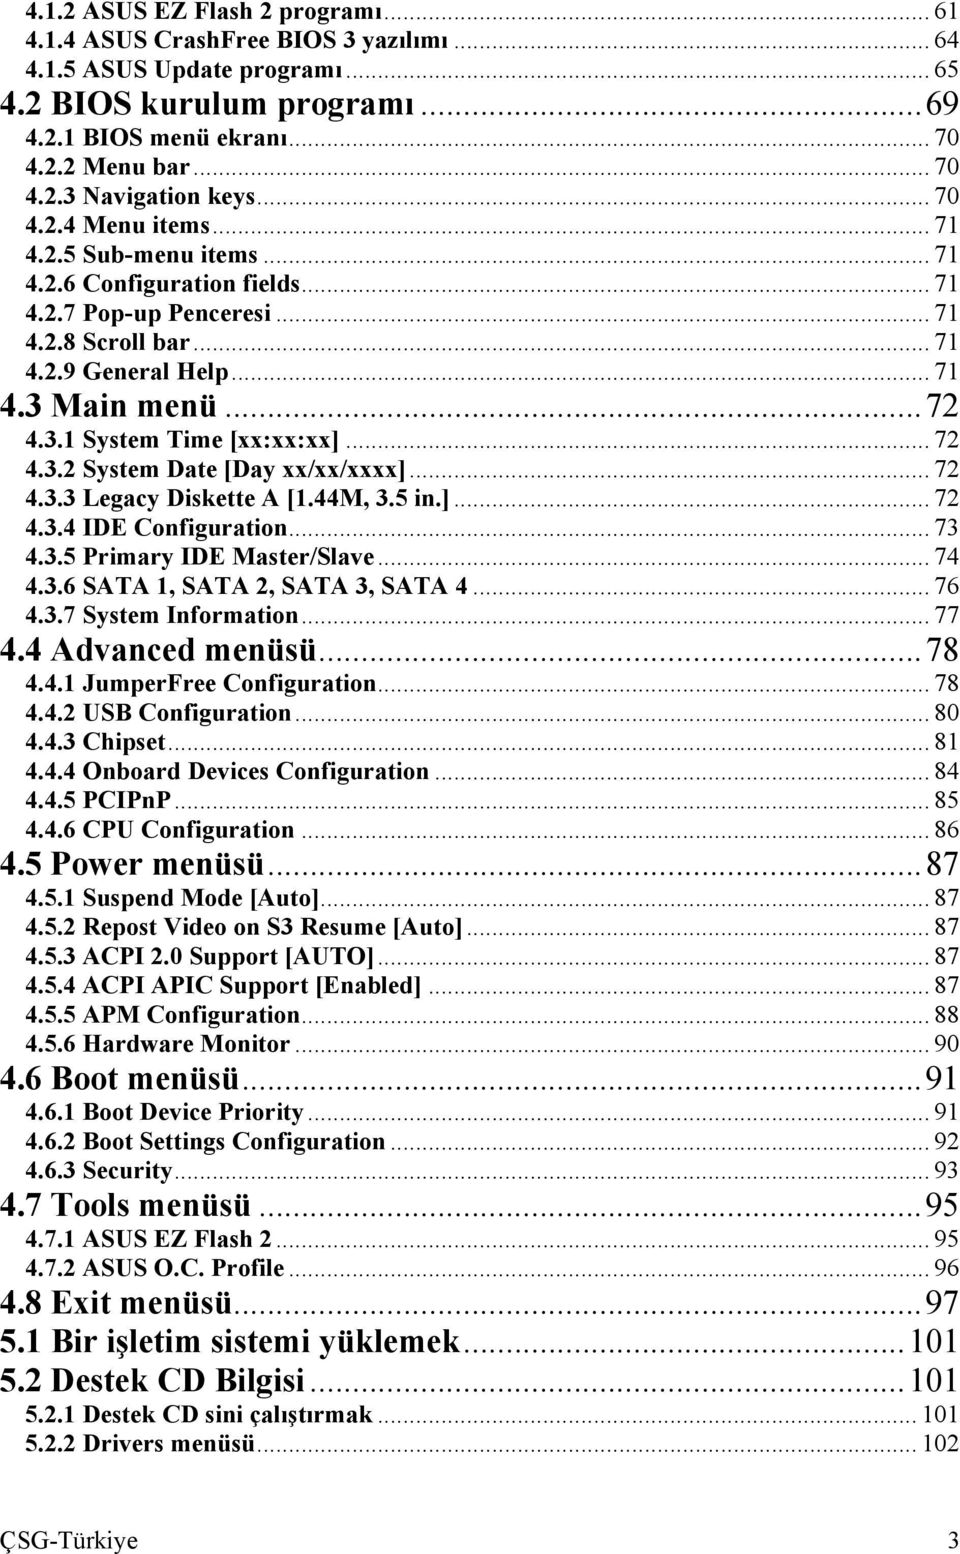 .. 72 4.3.2 System Date [Day xx/xx/xxxx]... 72 4.3.3 Legacy Diskette A [1.44M, 3.5 in.]... 72 4.3.4 IDE Configuration... 73 4.3.5 Primary IDE Master/Slave... 74 4.3.6 SATA 1, SATA 2, SATA 3, SATA 4.